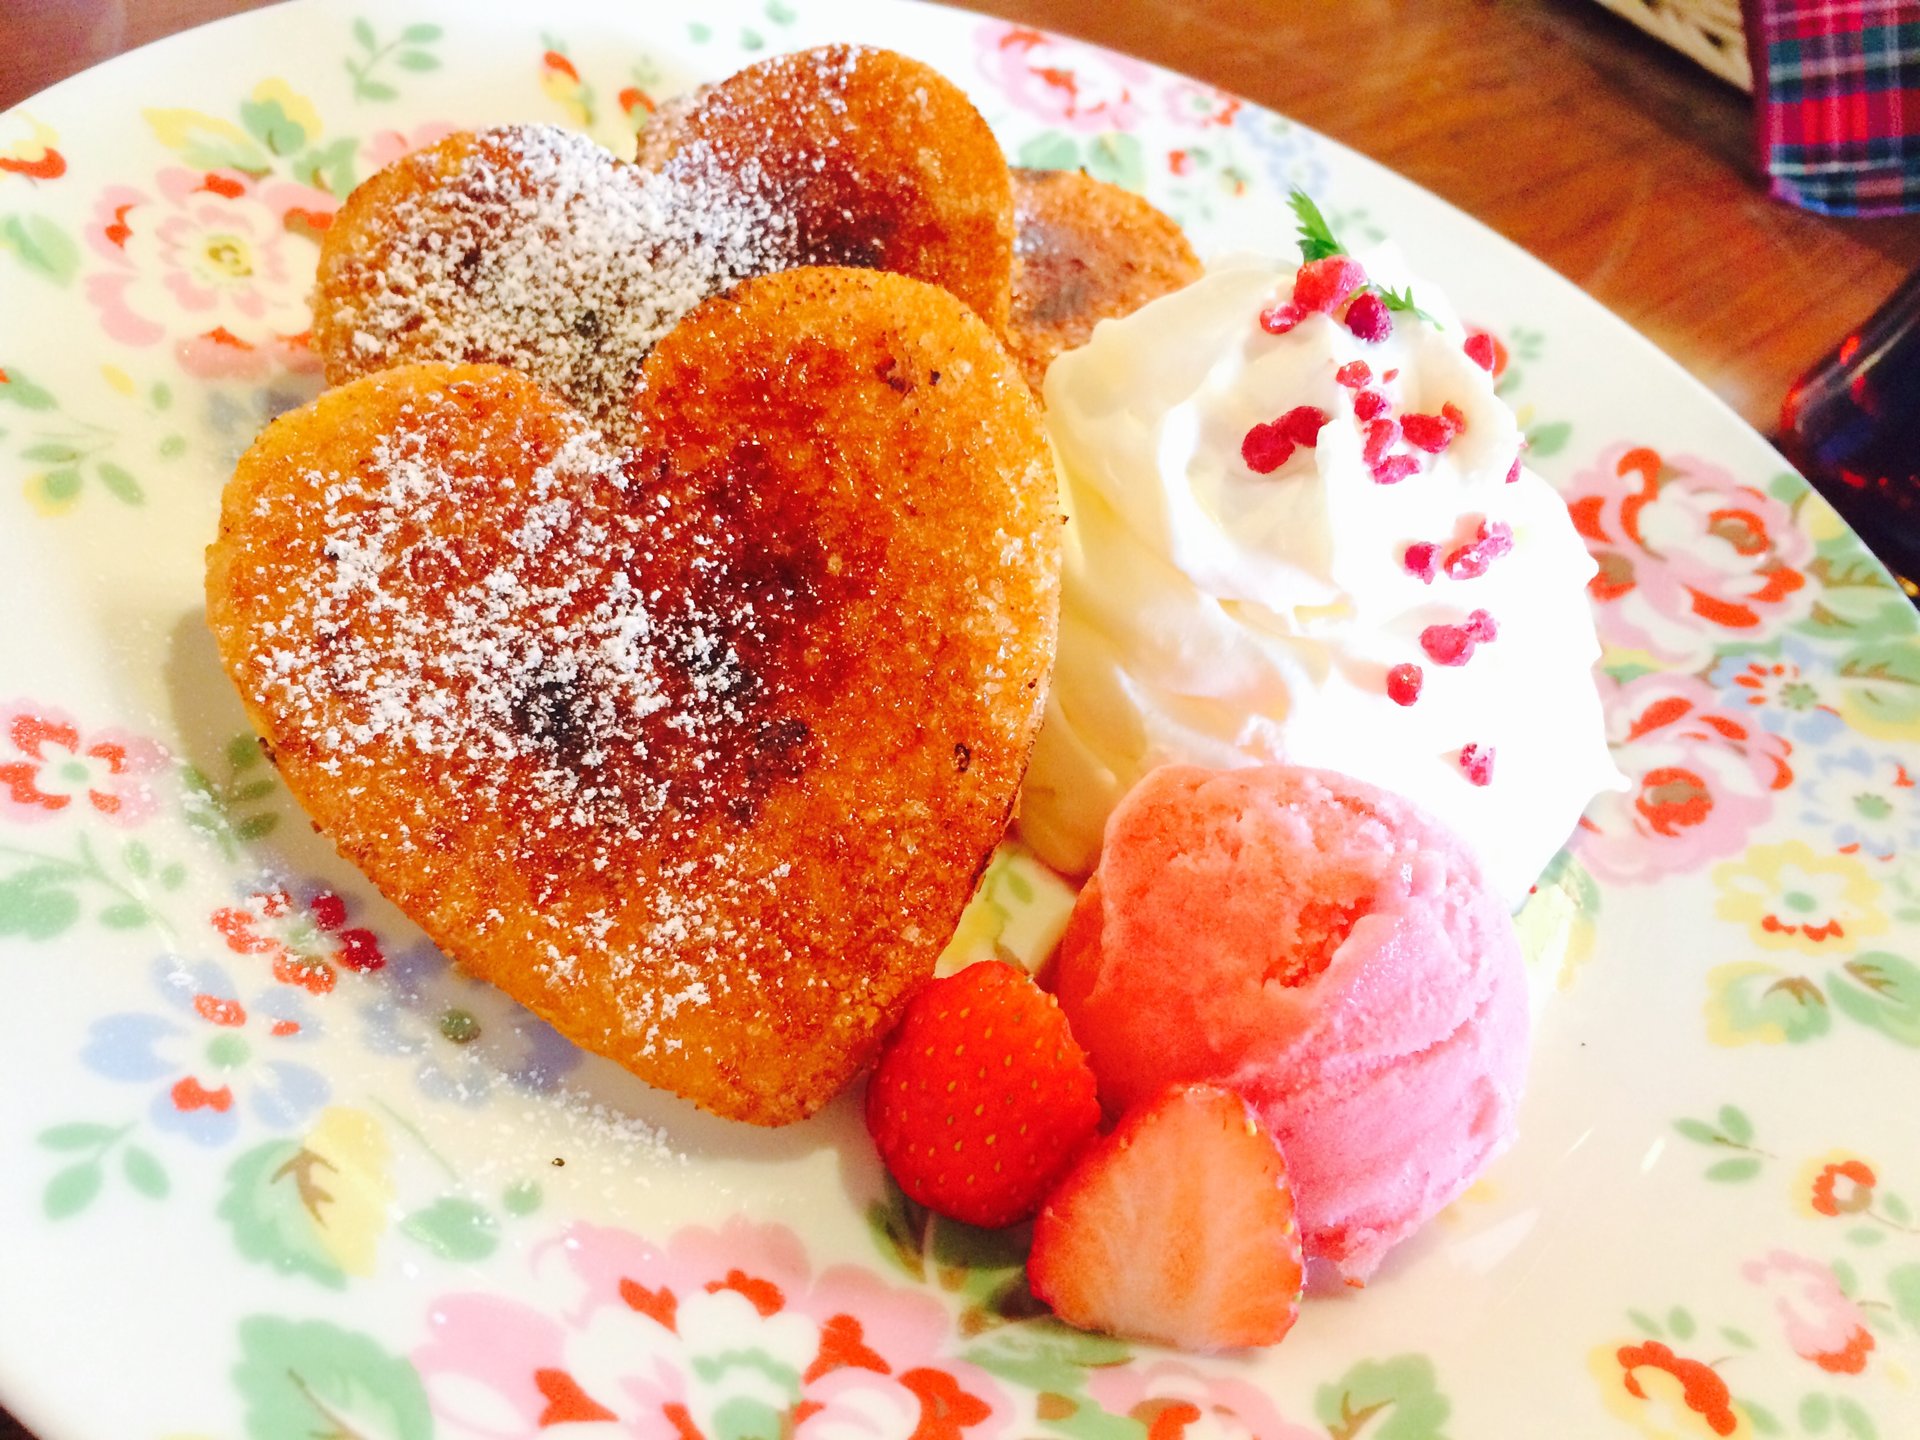 【渋谷のおすすめハイブリットスイーツ②】フレンチトースト×パンケーキは想像を超えた美味しさでした。